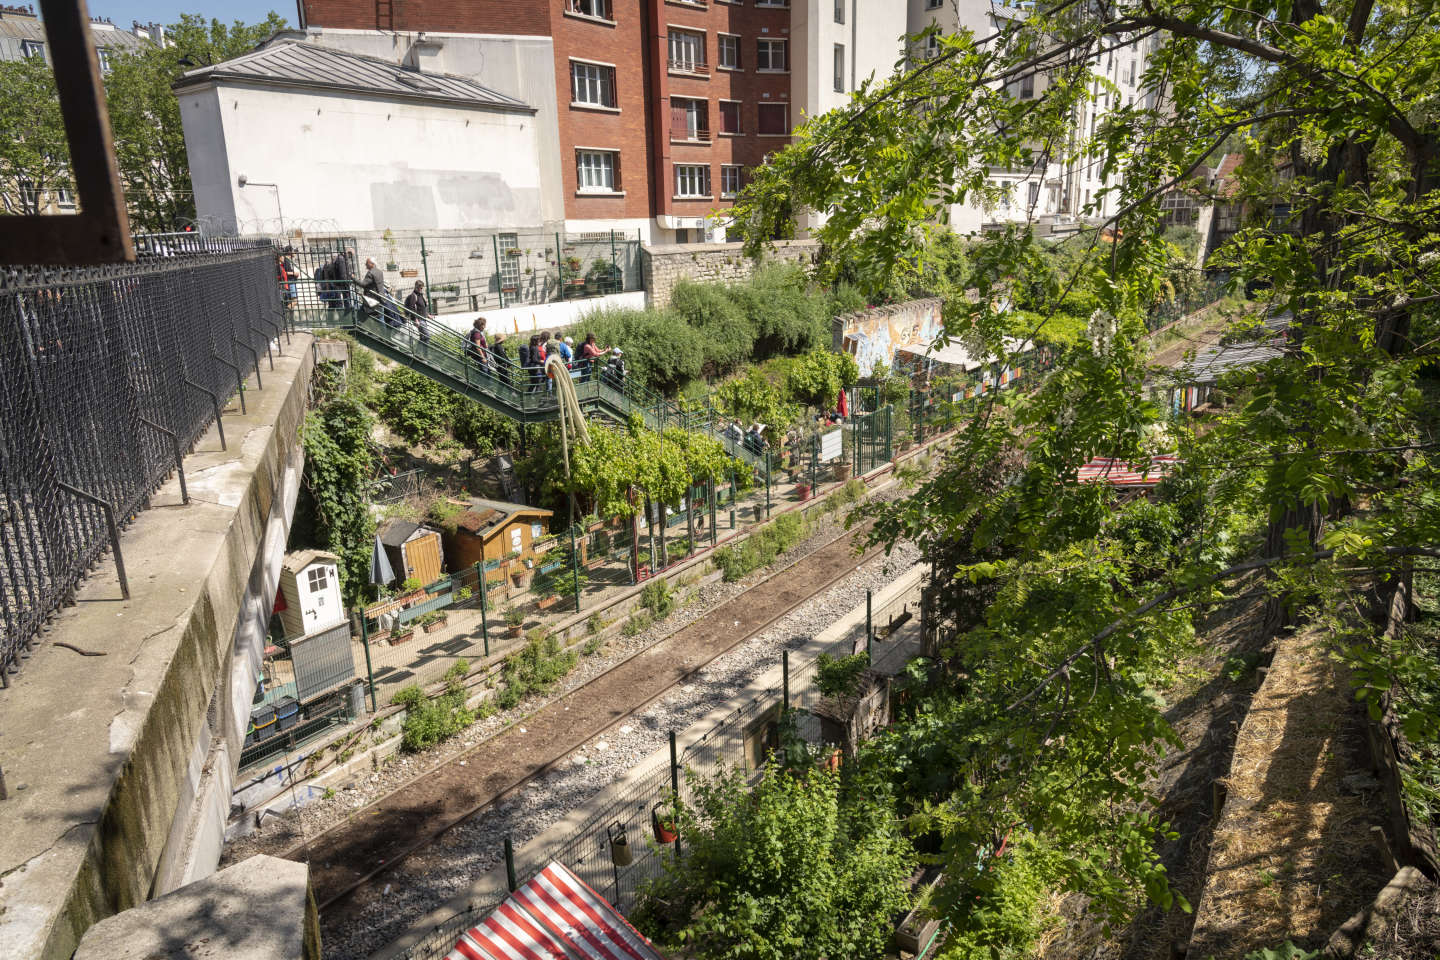 « Il faut repenser en profondeur le modèle d’habitat urbain en multipliant les jardins collectifs »